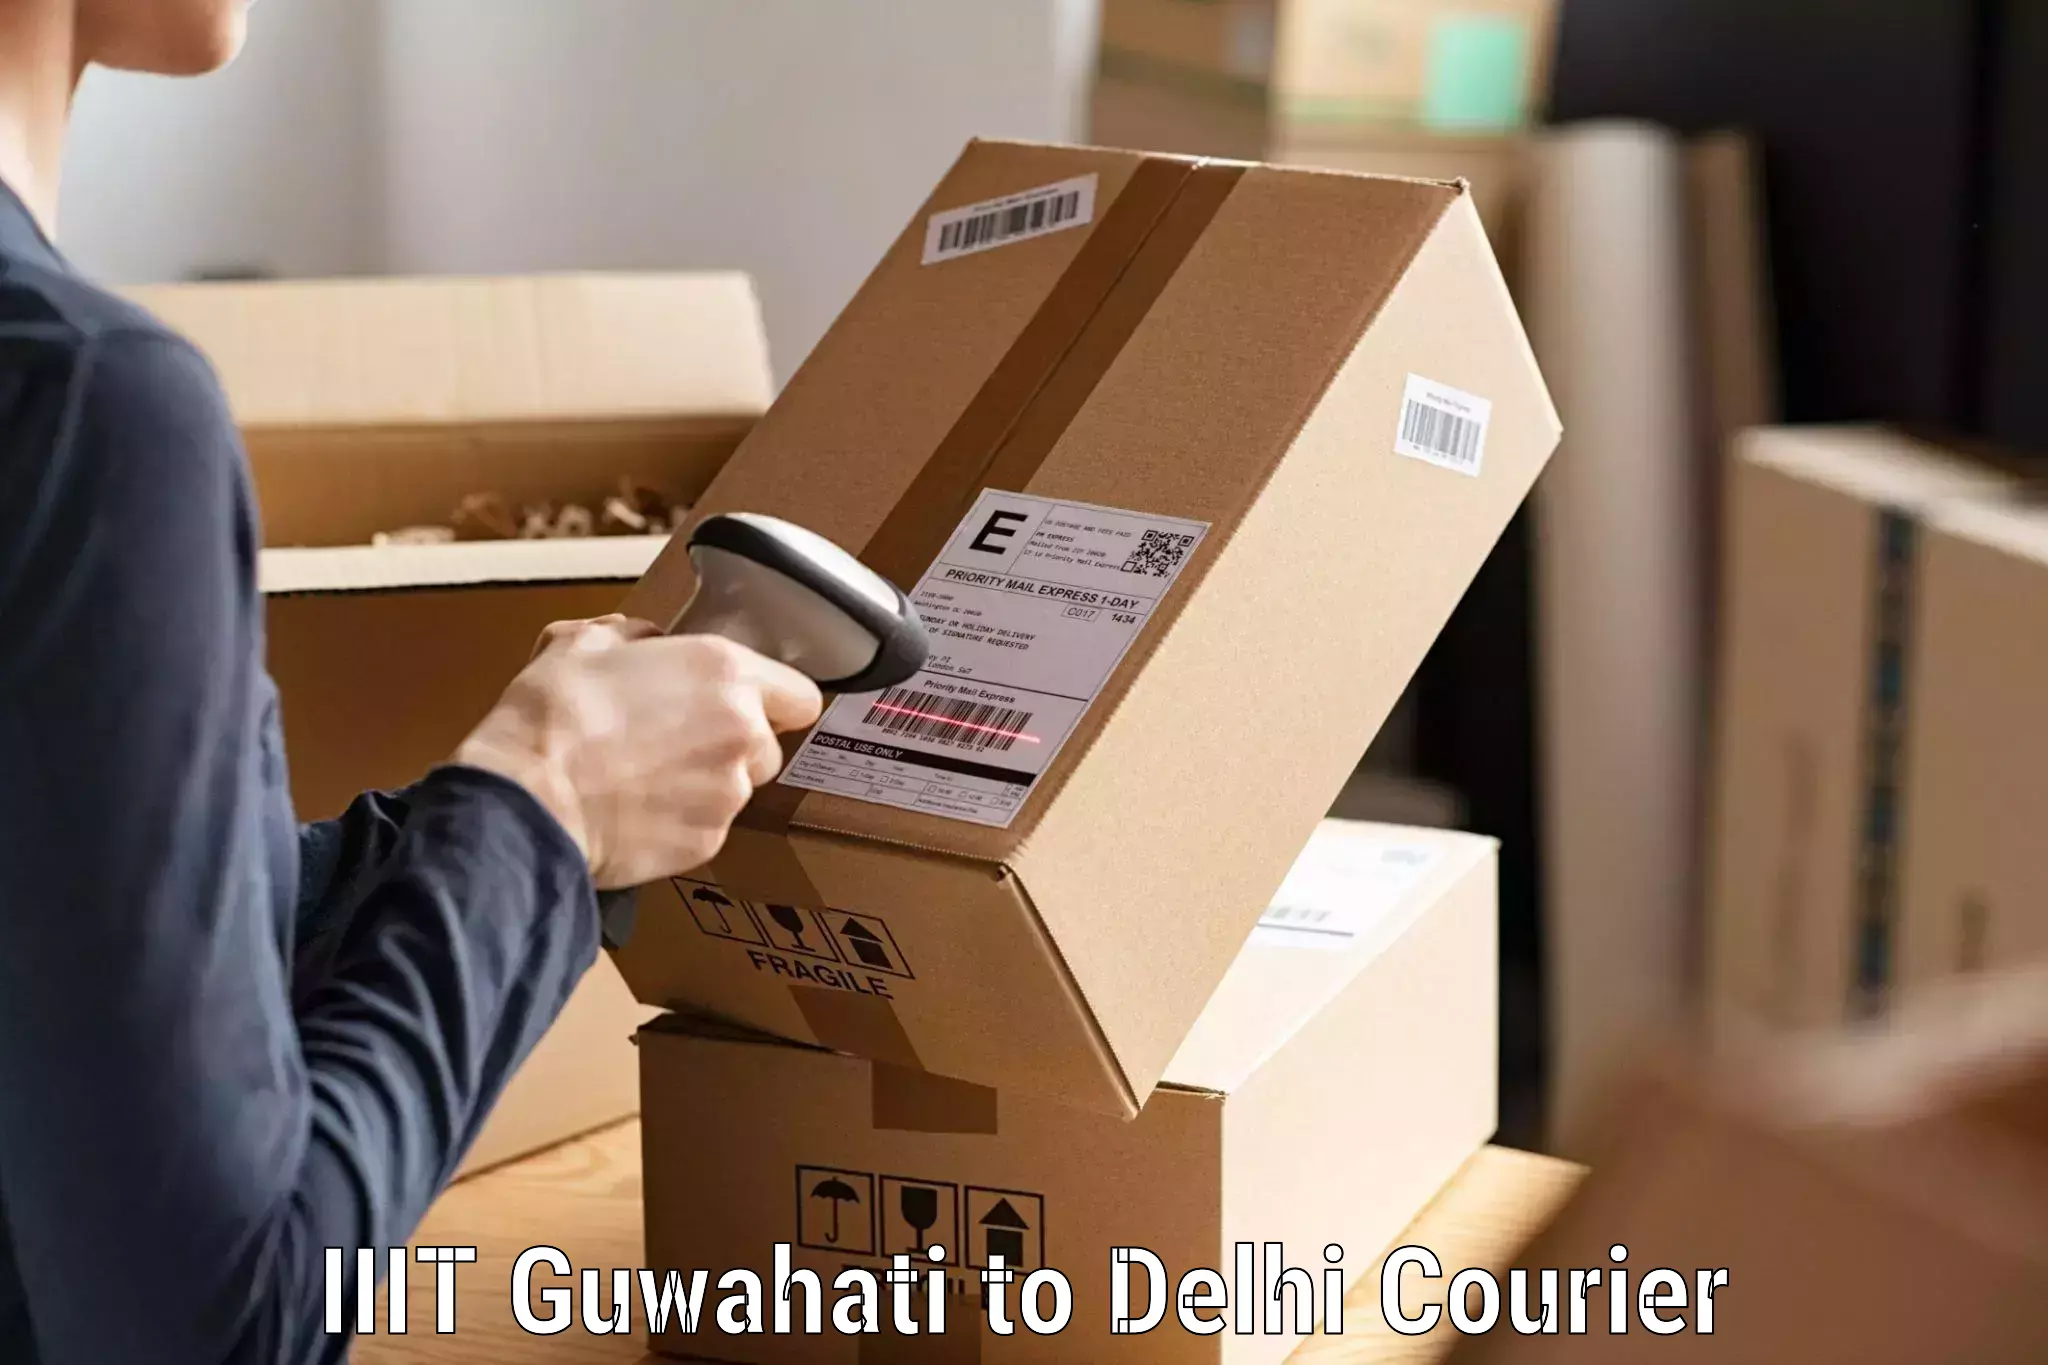 Versatile courier offerings IIIT Guwahati to University of Delhi